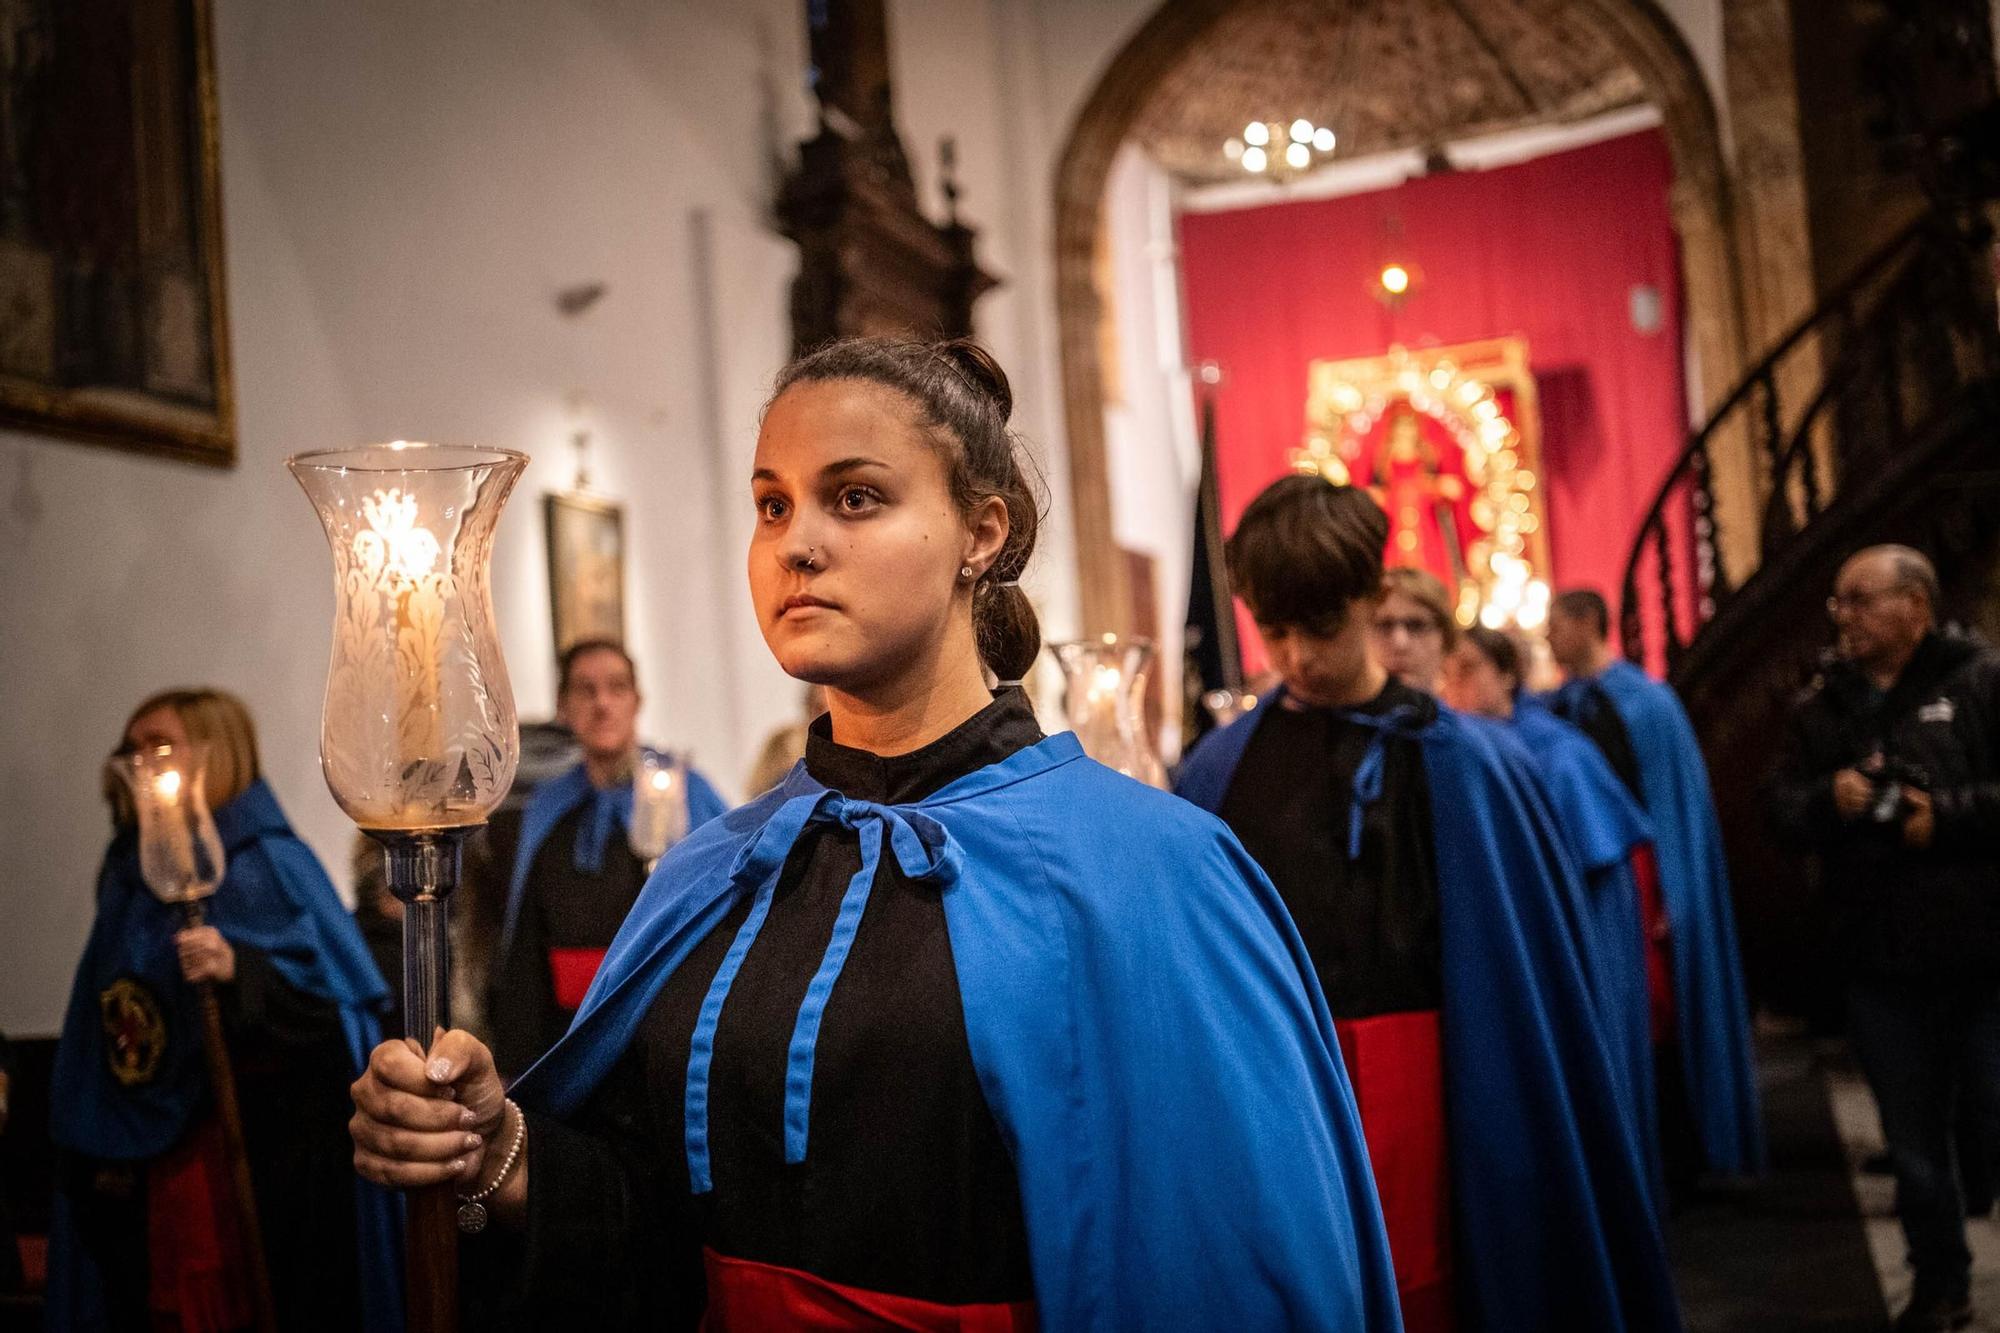 Procesión de la Dolorosa de la parroquia de La Concepción de La Laguna